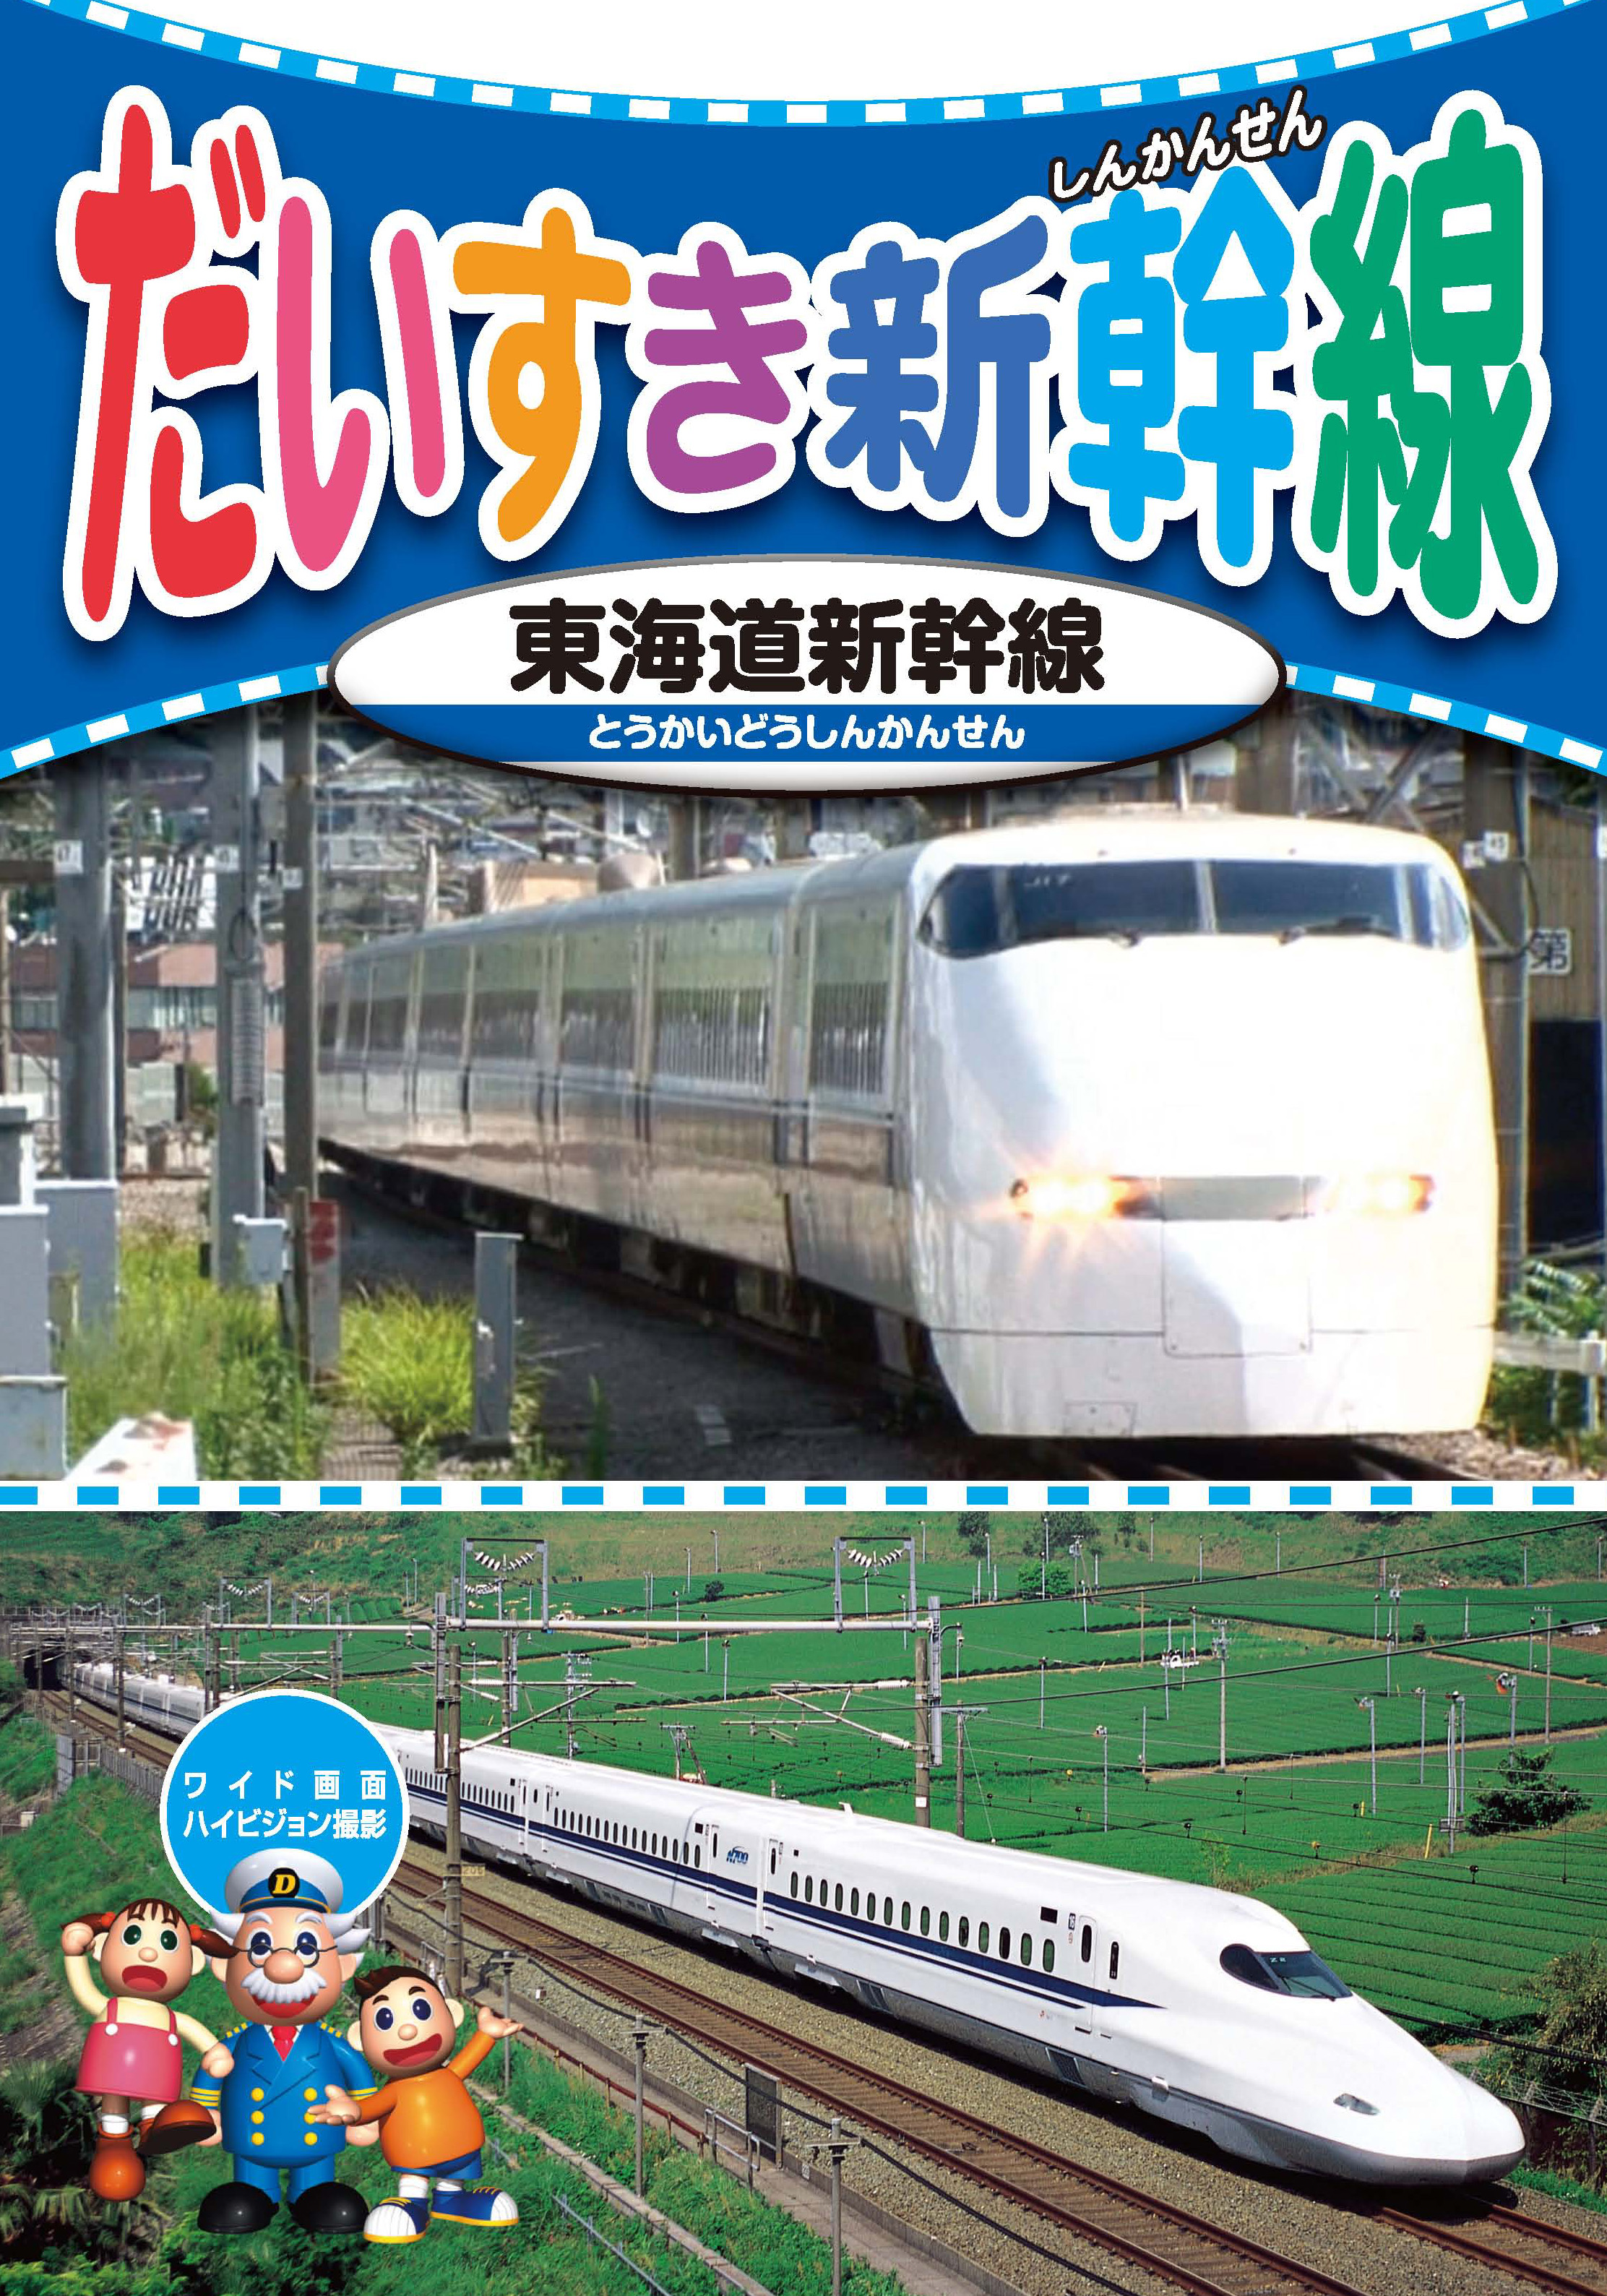 だいすき新幹線3 東海道新幹線